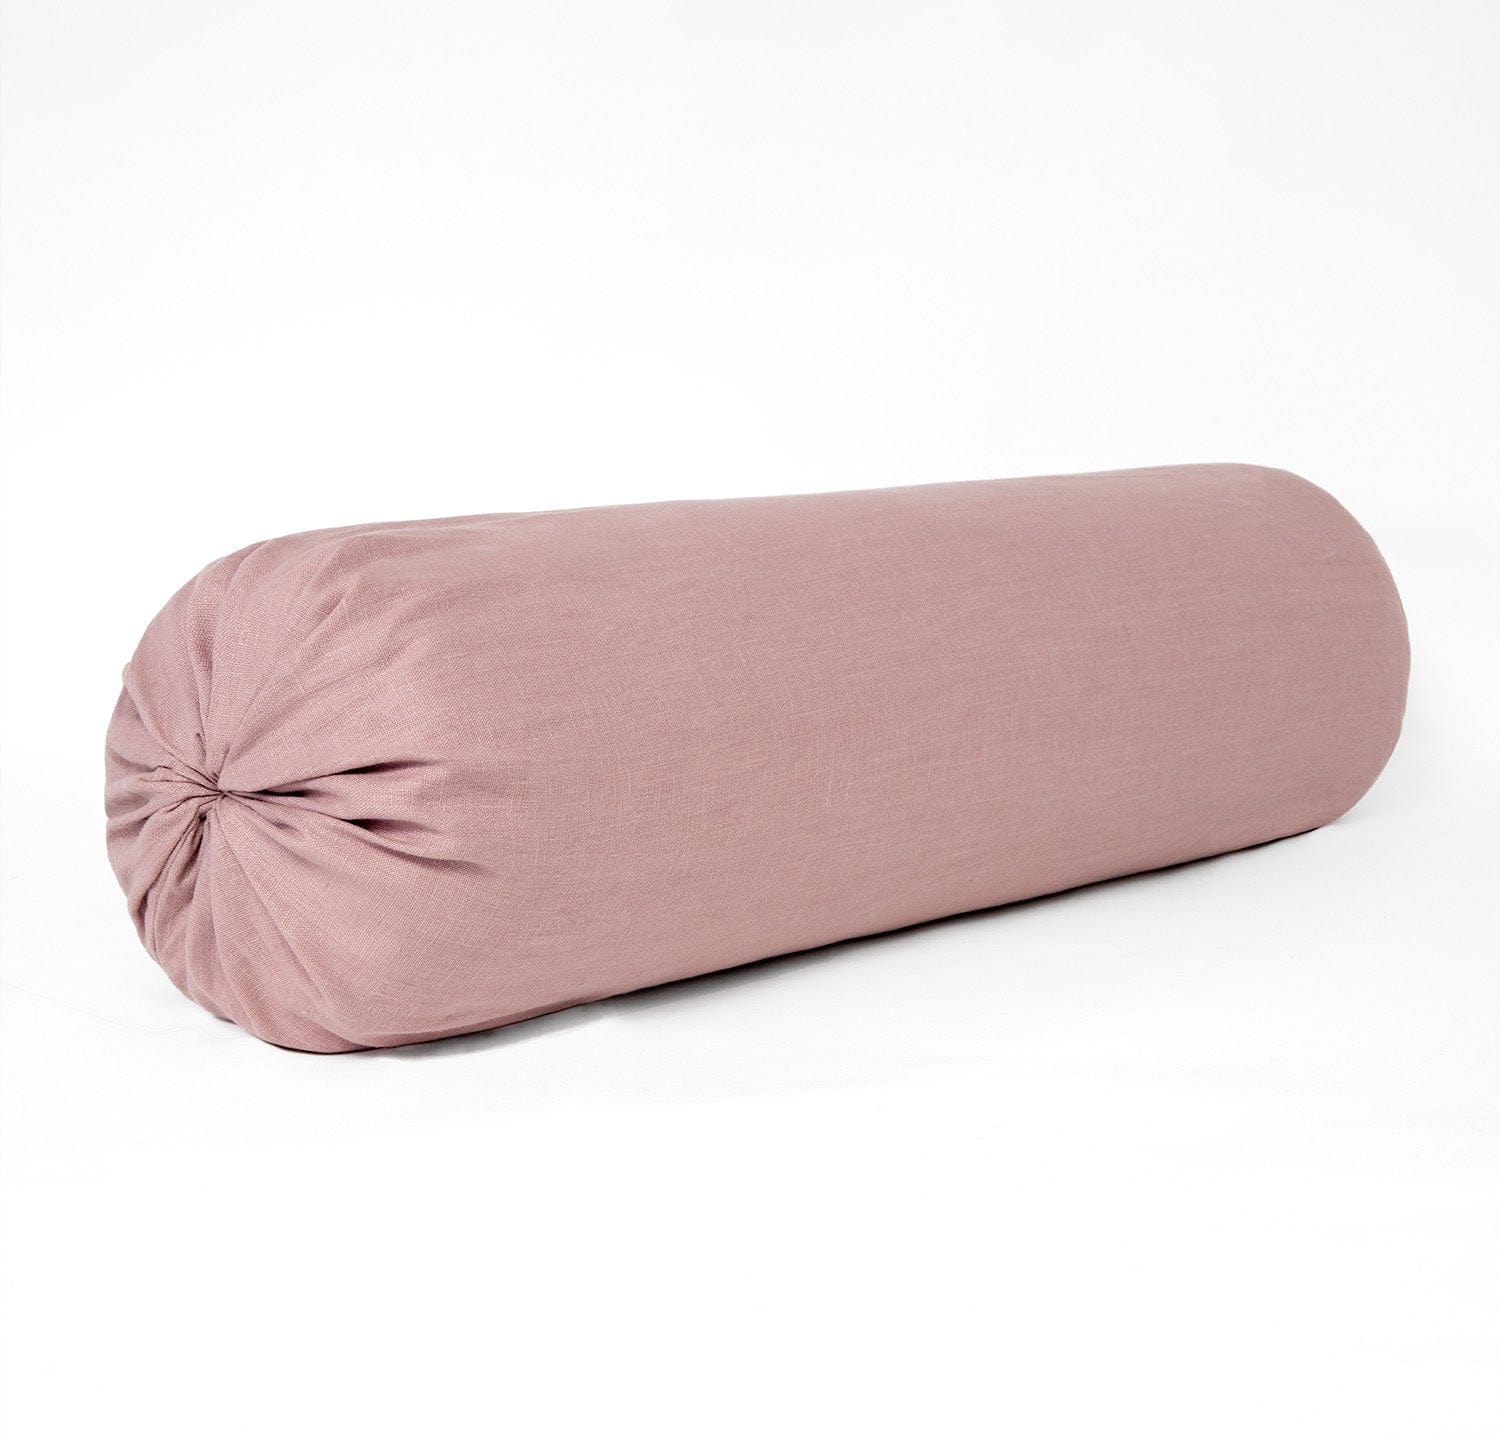 Best Linen Bolster Pillow Cover